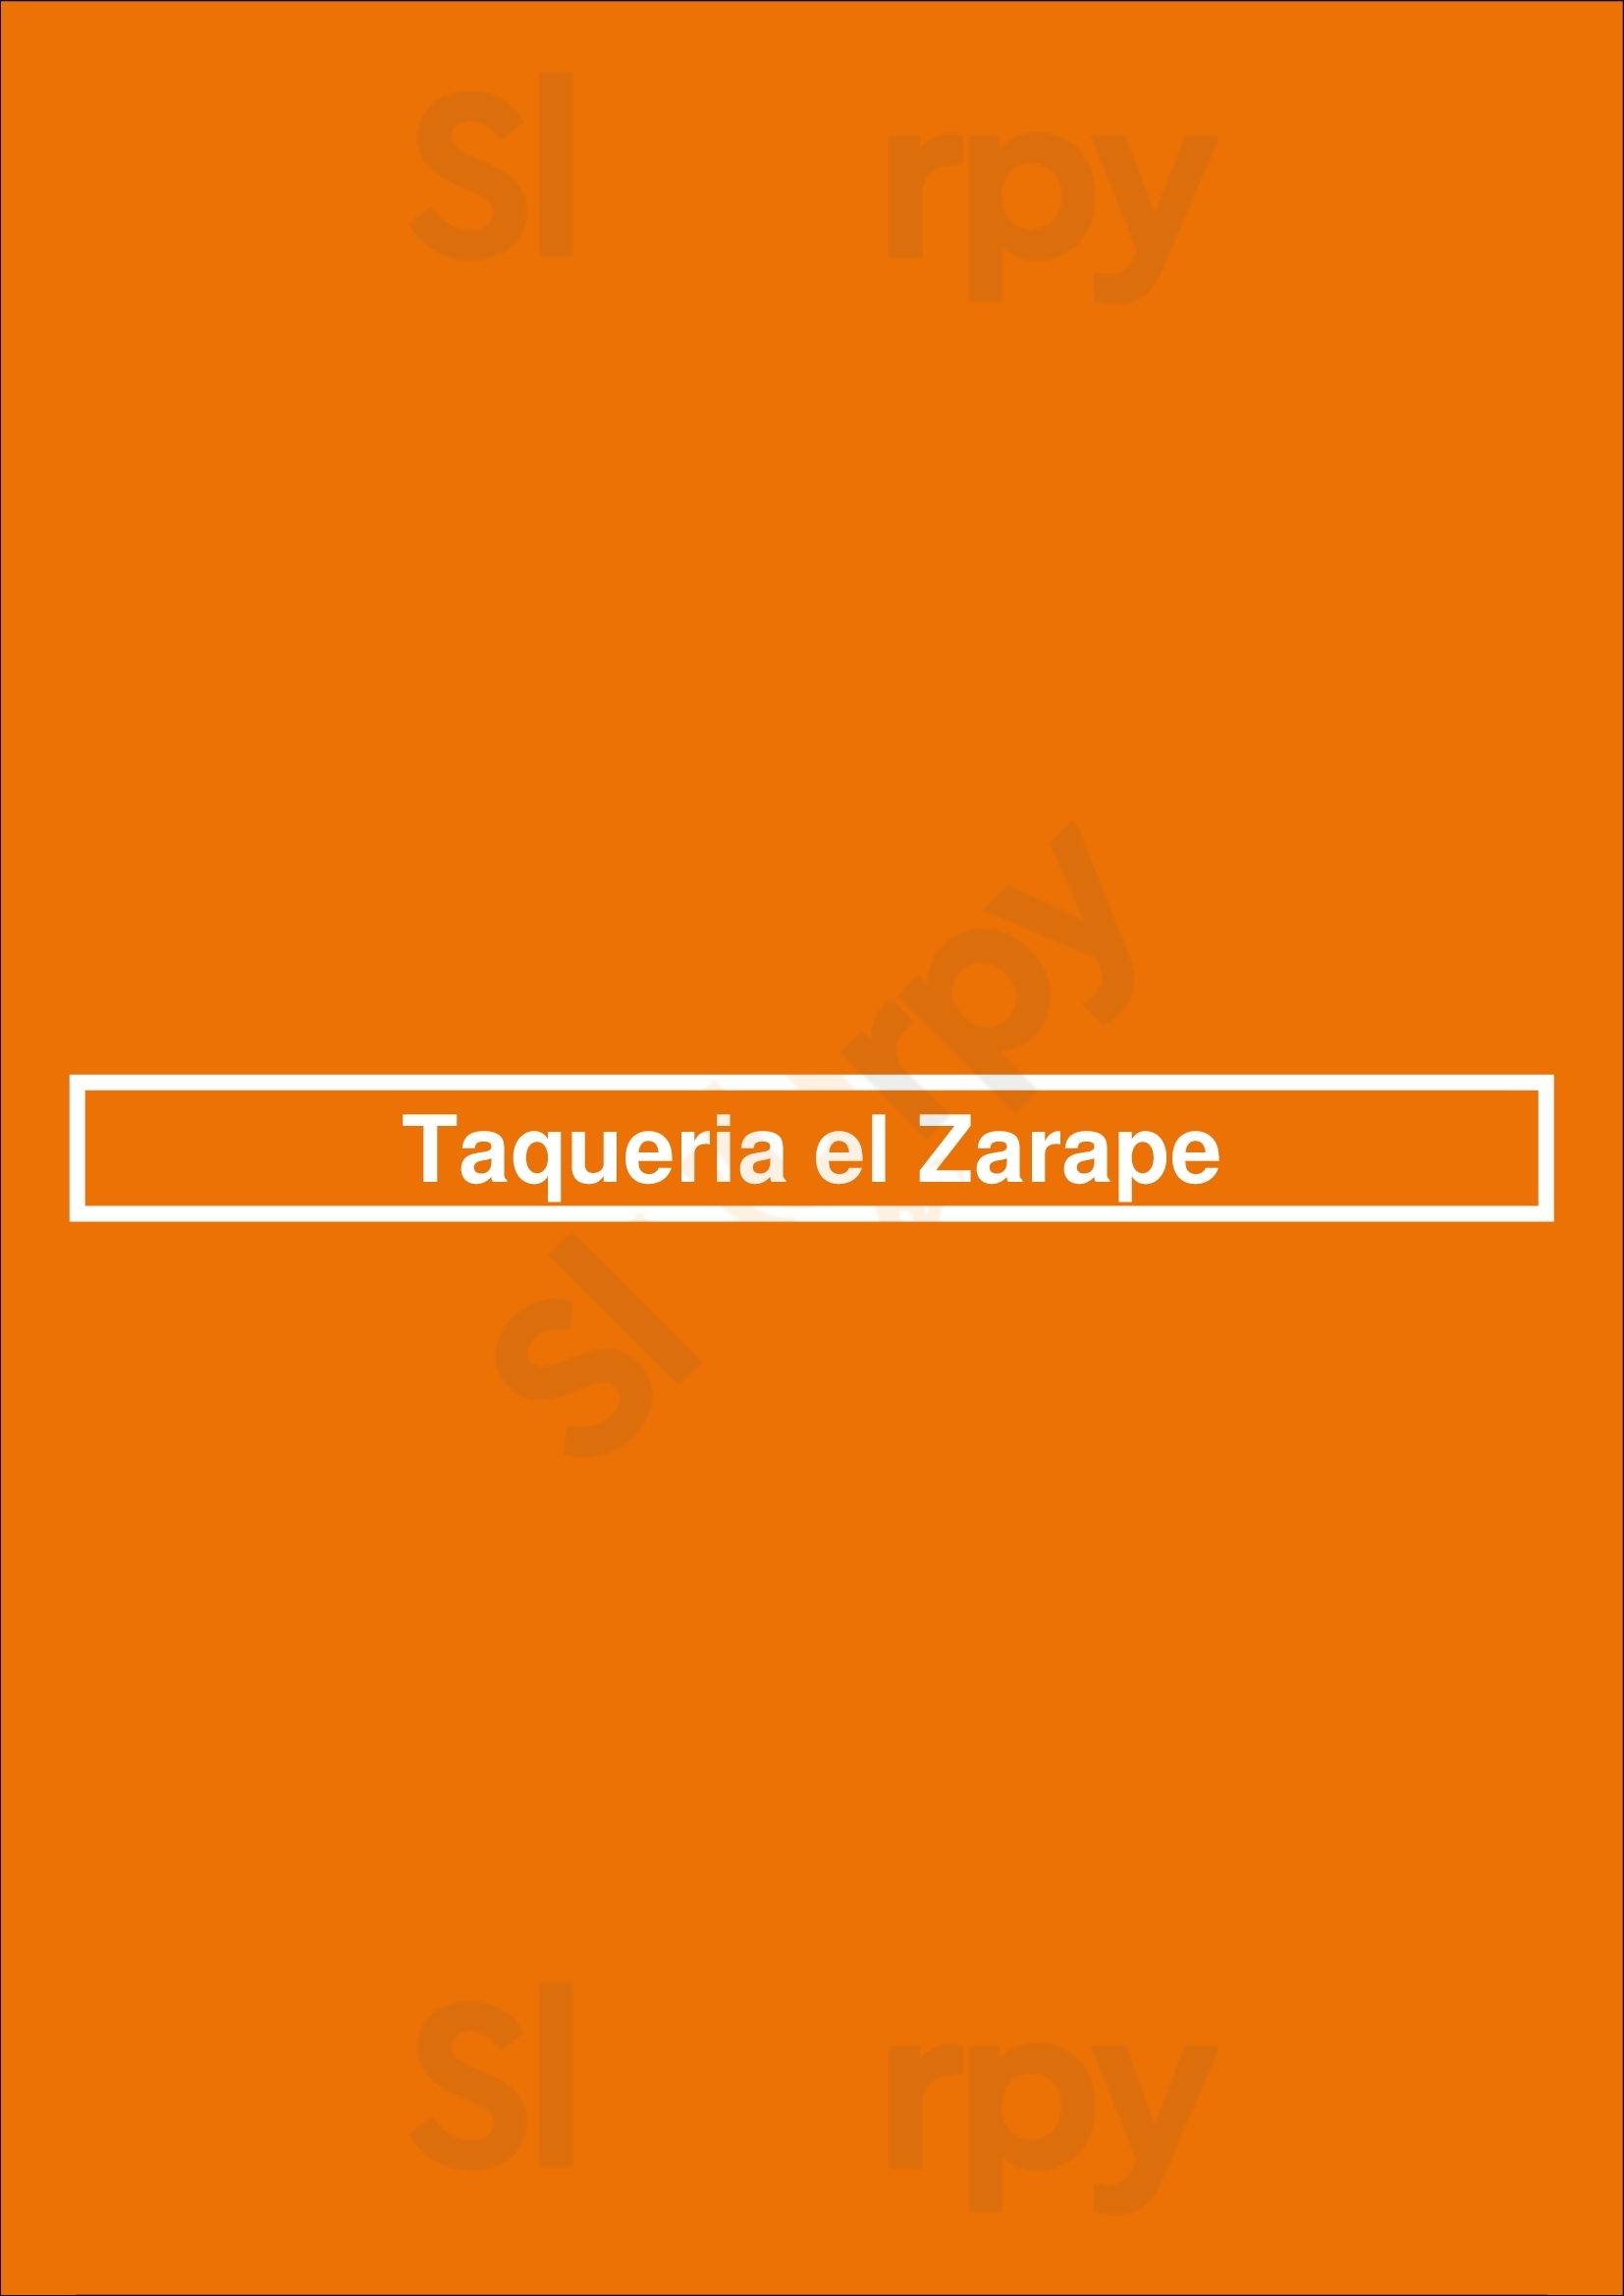 Taqueria El Zarape Los Angeles Menu - 1